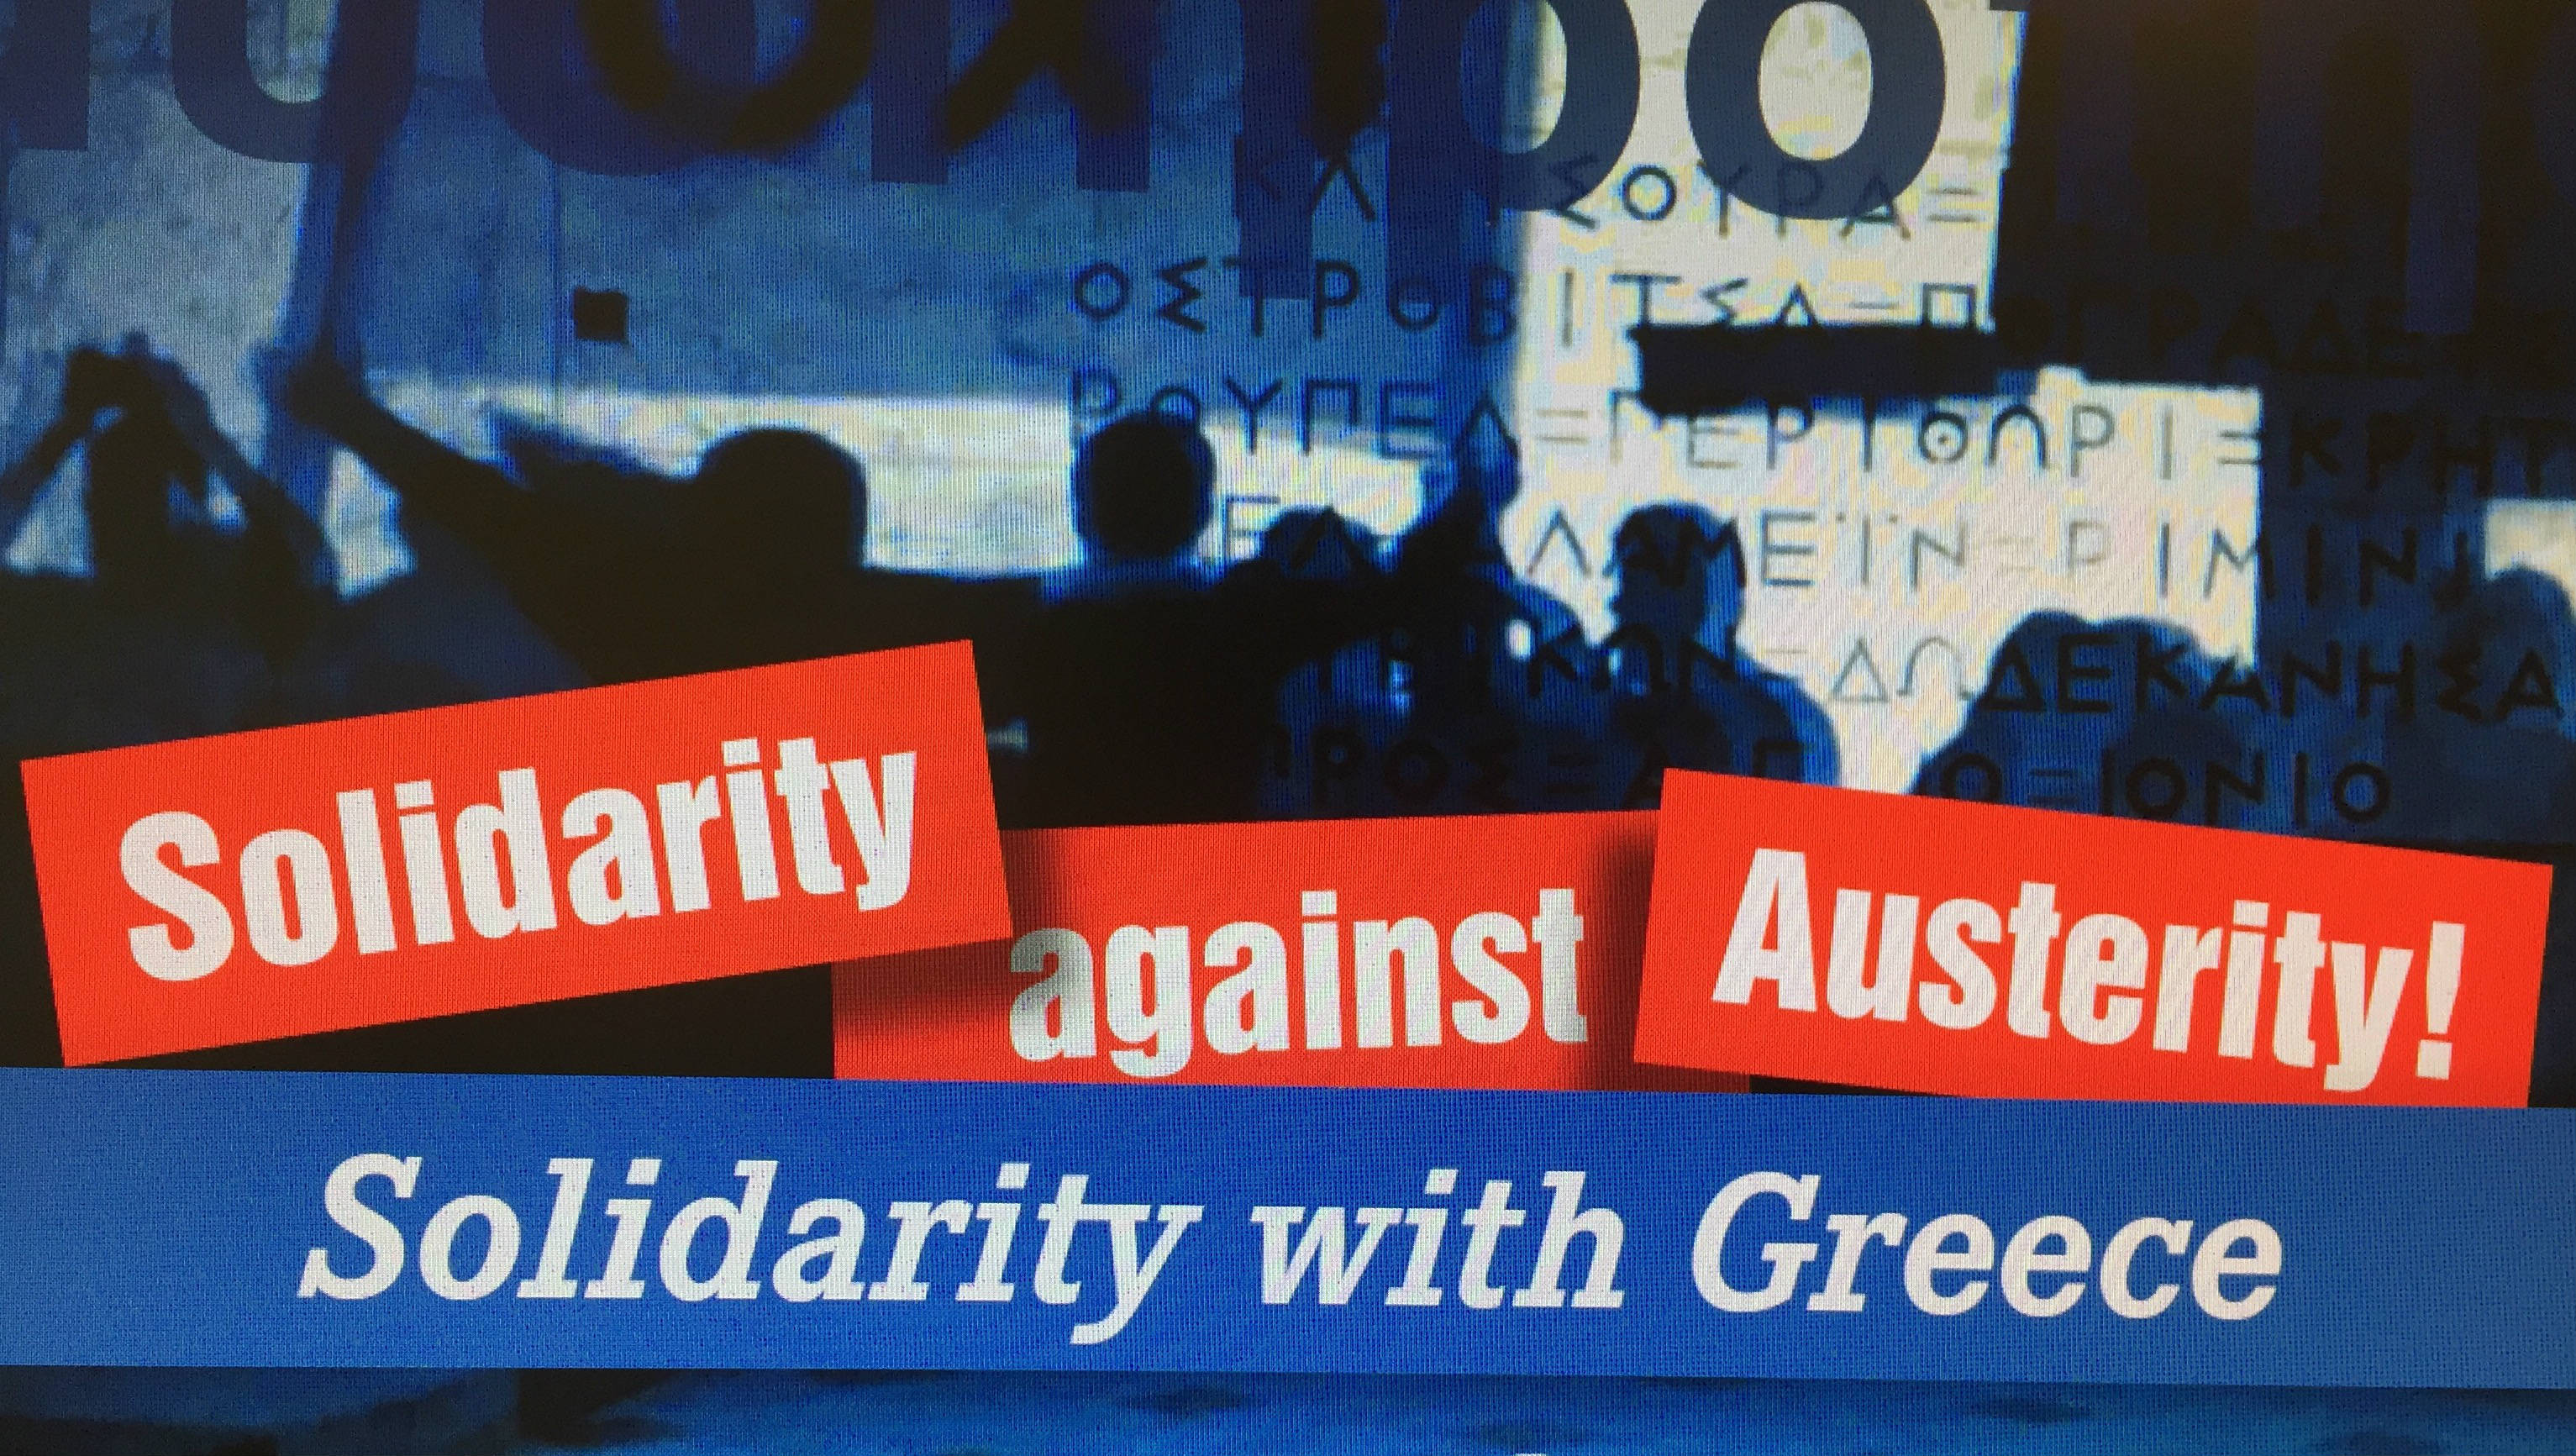 Μεγάλη η απήχηση της εκδήλωσης αλληλεγγύης προς την Ελλάδα στο Βερολίνο